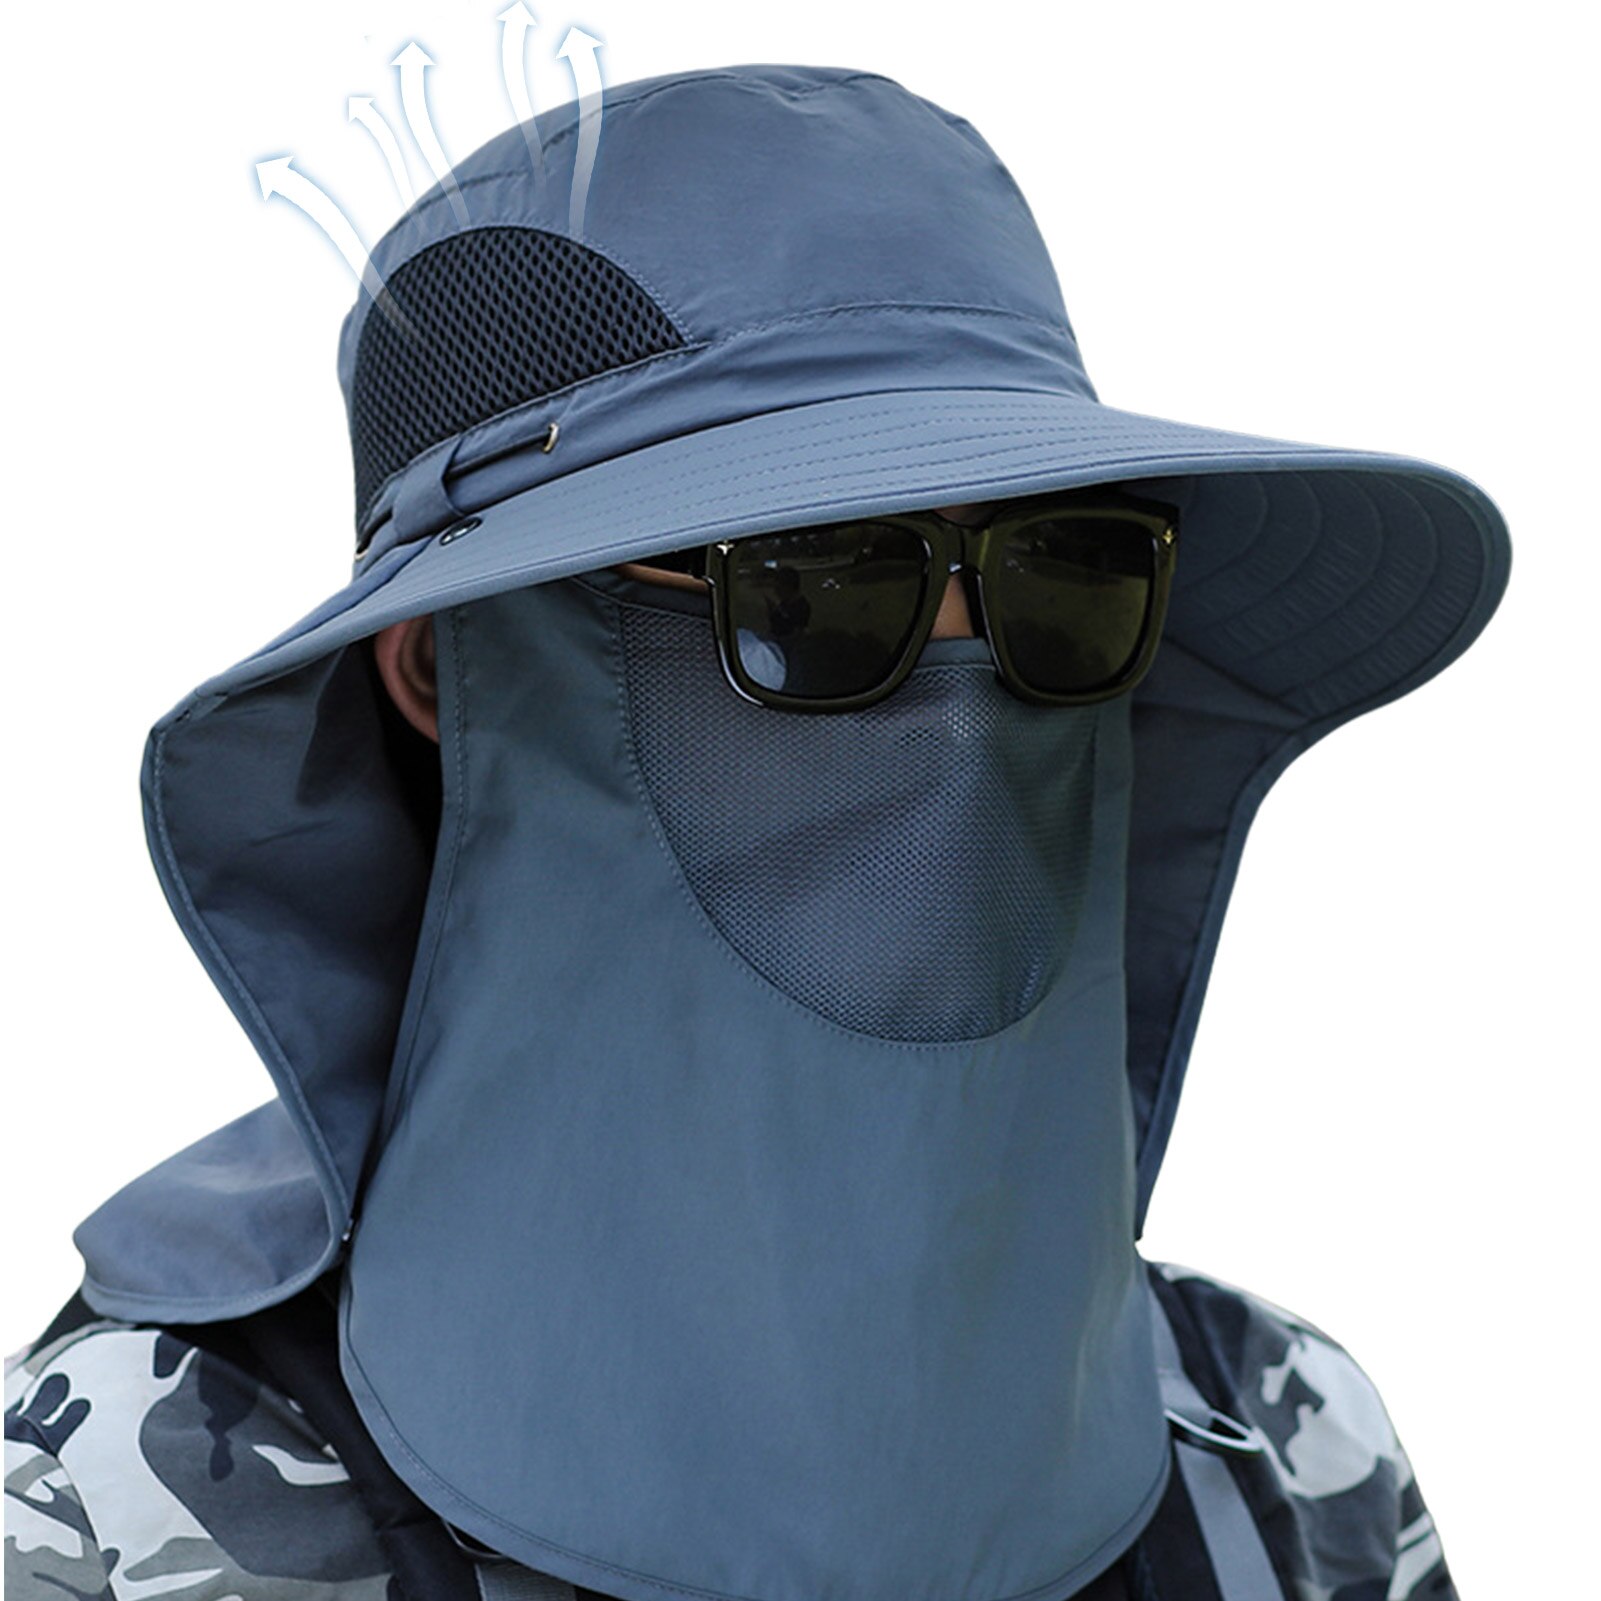 남성용 버킷 모자 통기성 여름 모자, 야외 활동을 위한 넓은 챙 및 얼굴 커버가있는 남성용 태양 보호 모자